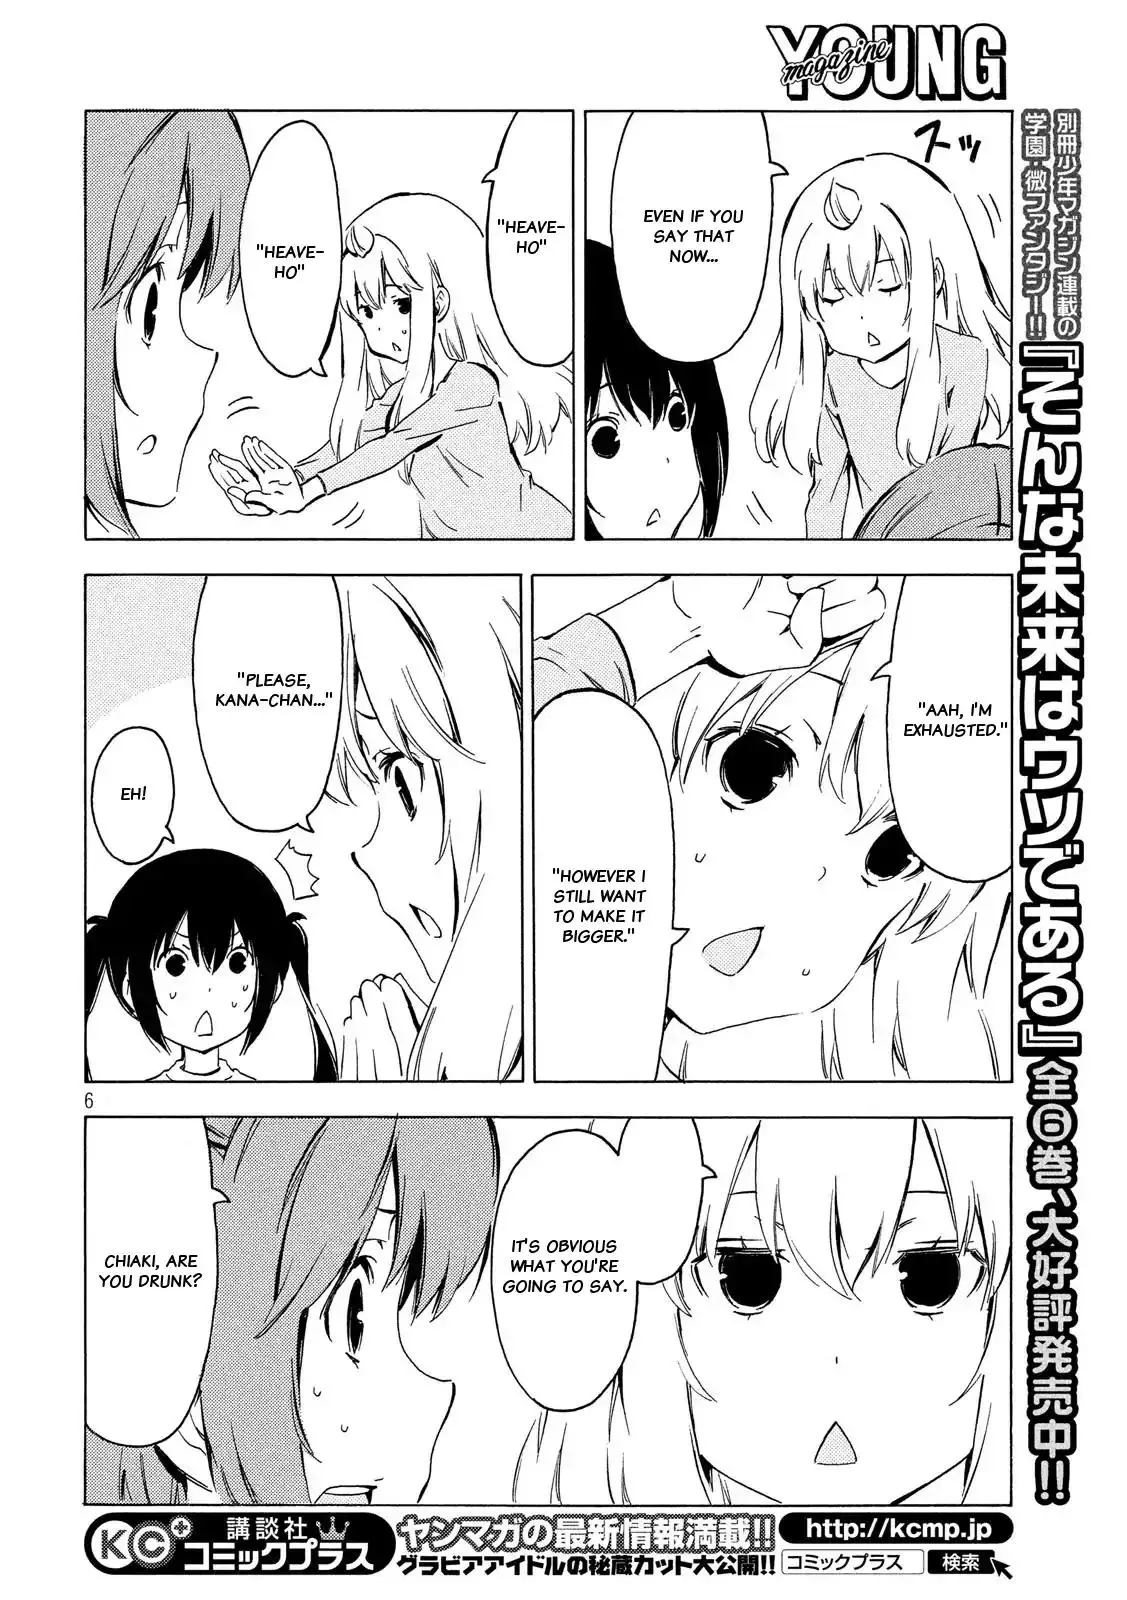 Minami-ke - 332 page 5